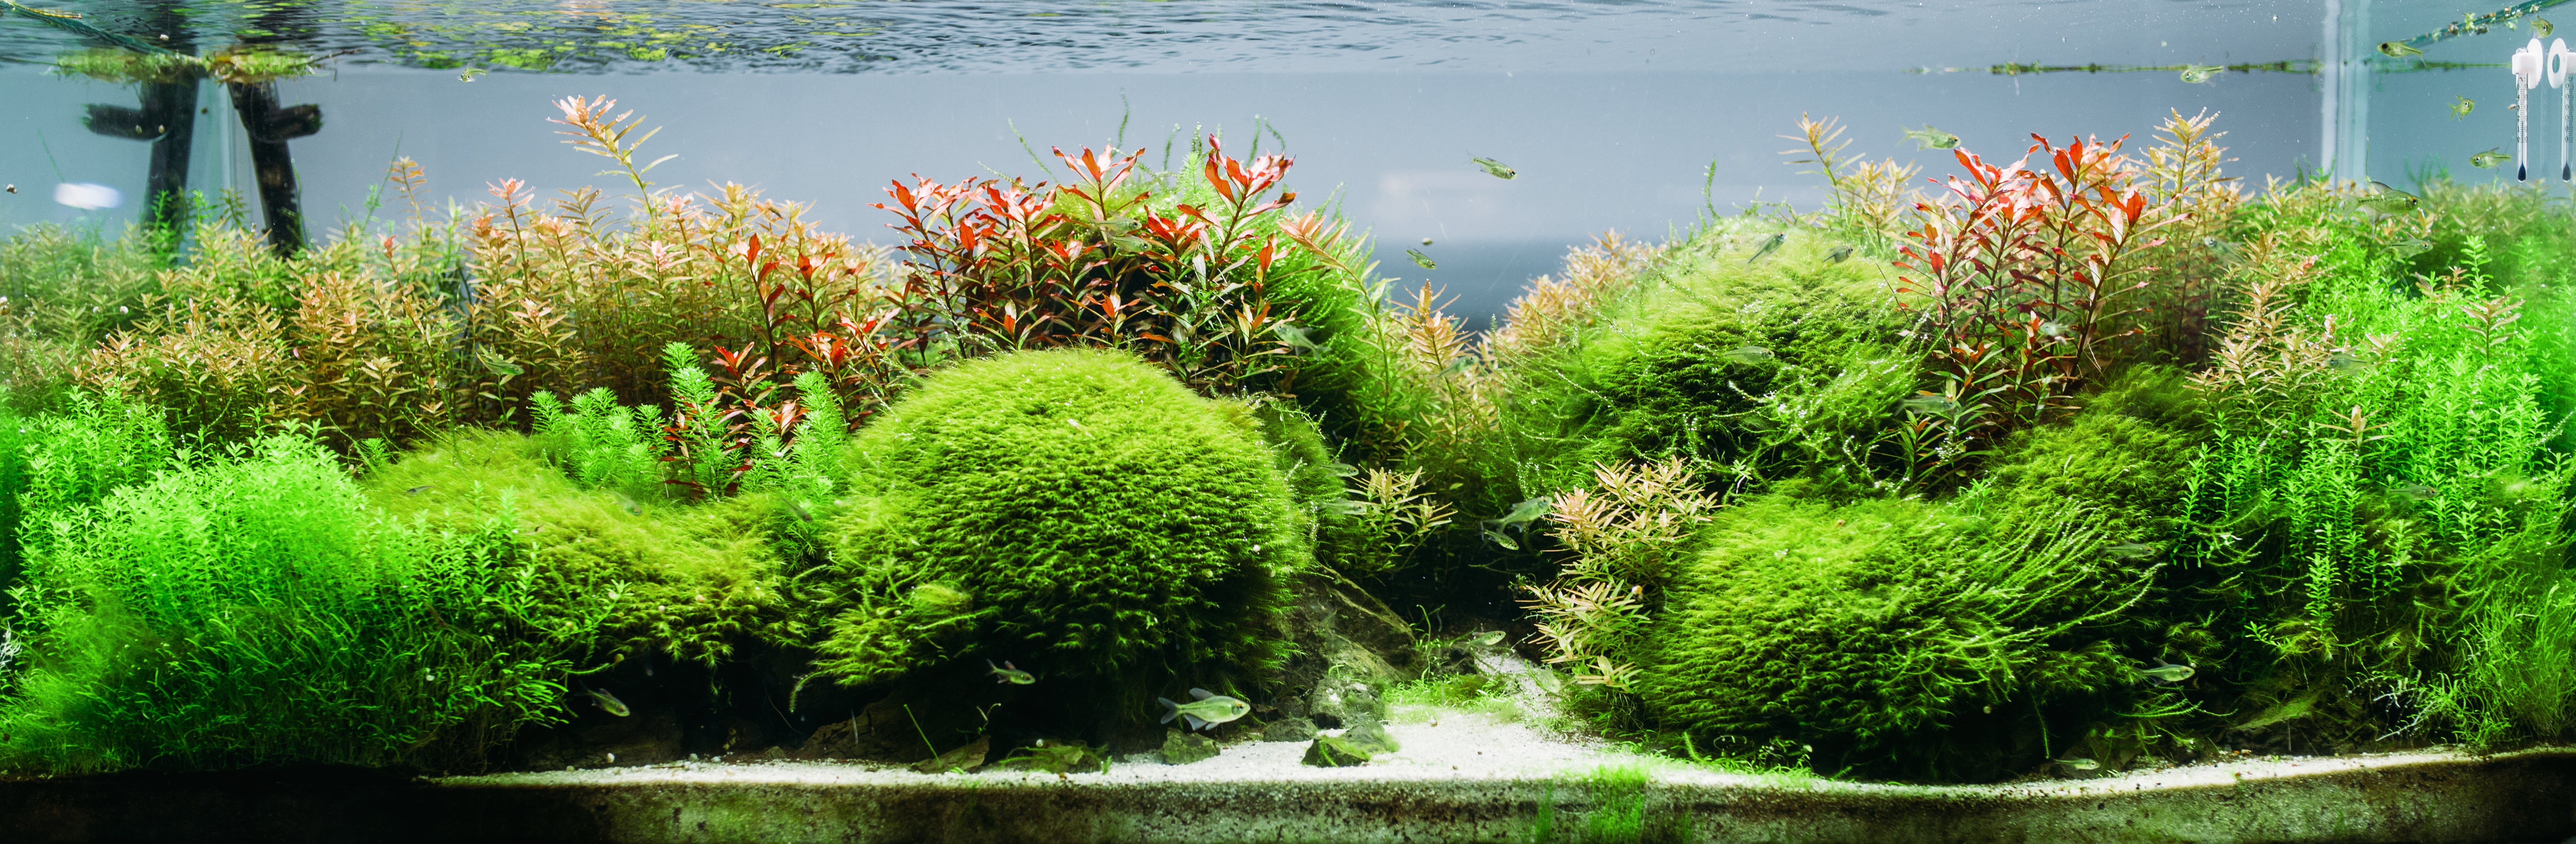 Aquarium Set-up: Tips for a Successful Freshwater Planted Aquarium